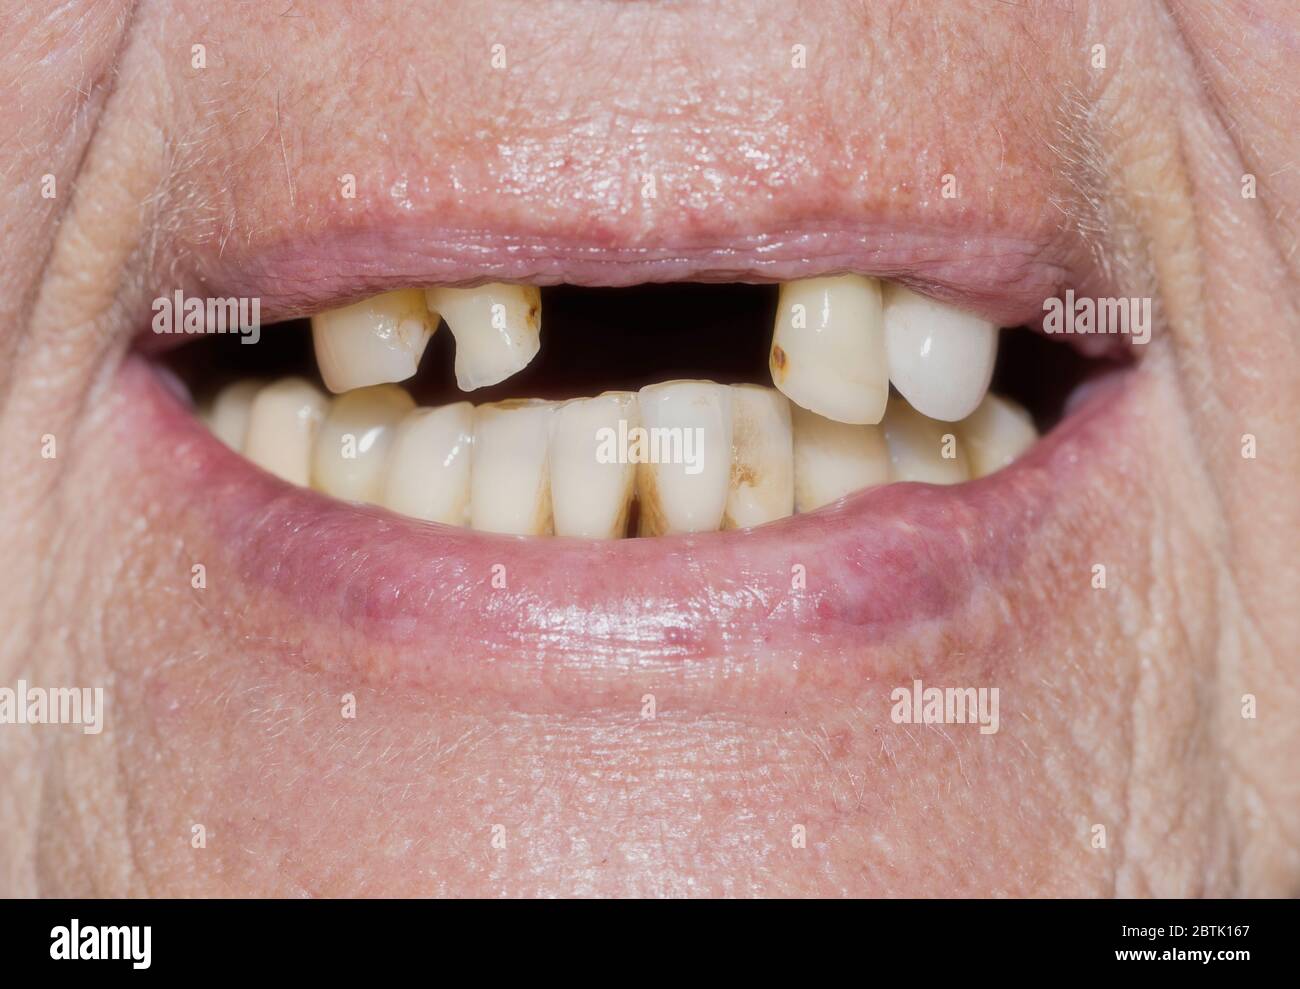 Donna anziana con divari dentali, immagine simbolica della povertà in età avanzata Foto Stock